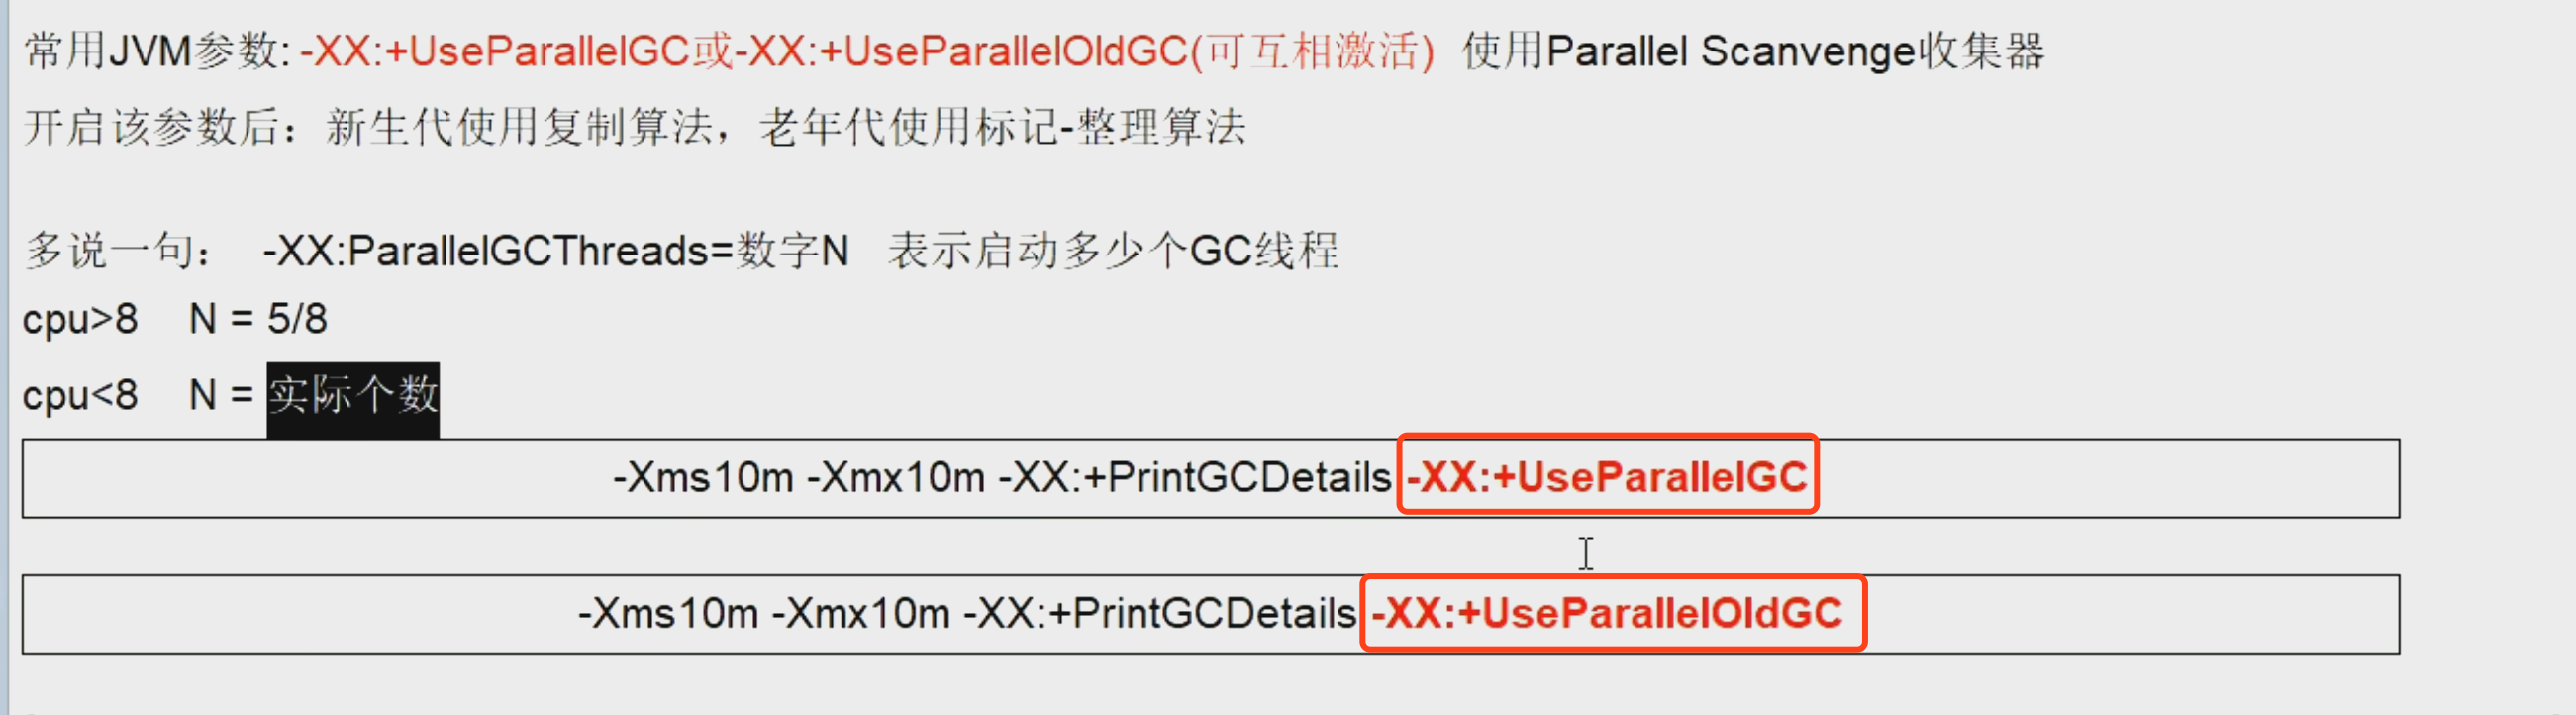 15-垃圾收集器16-ParallelGC收集器02.png